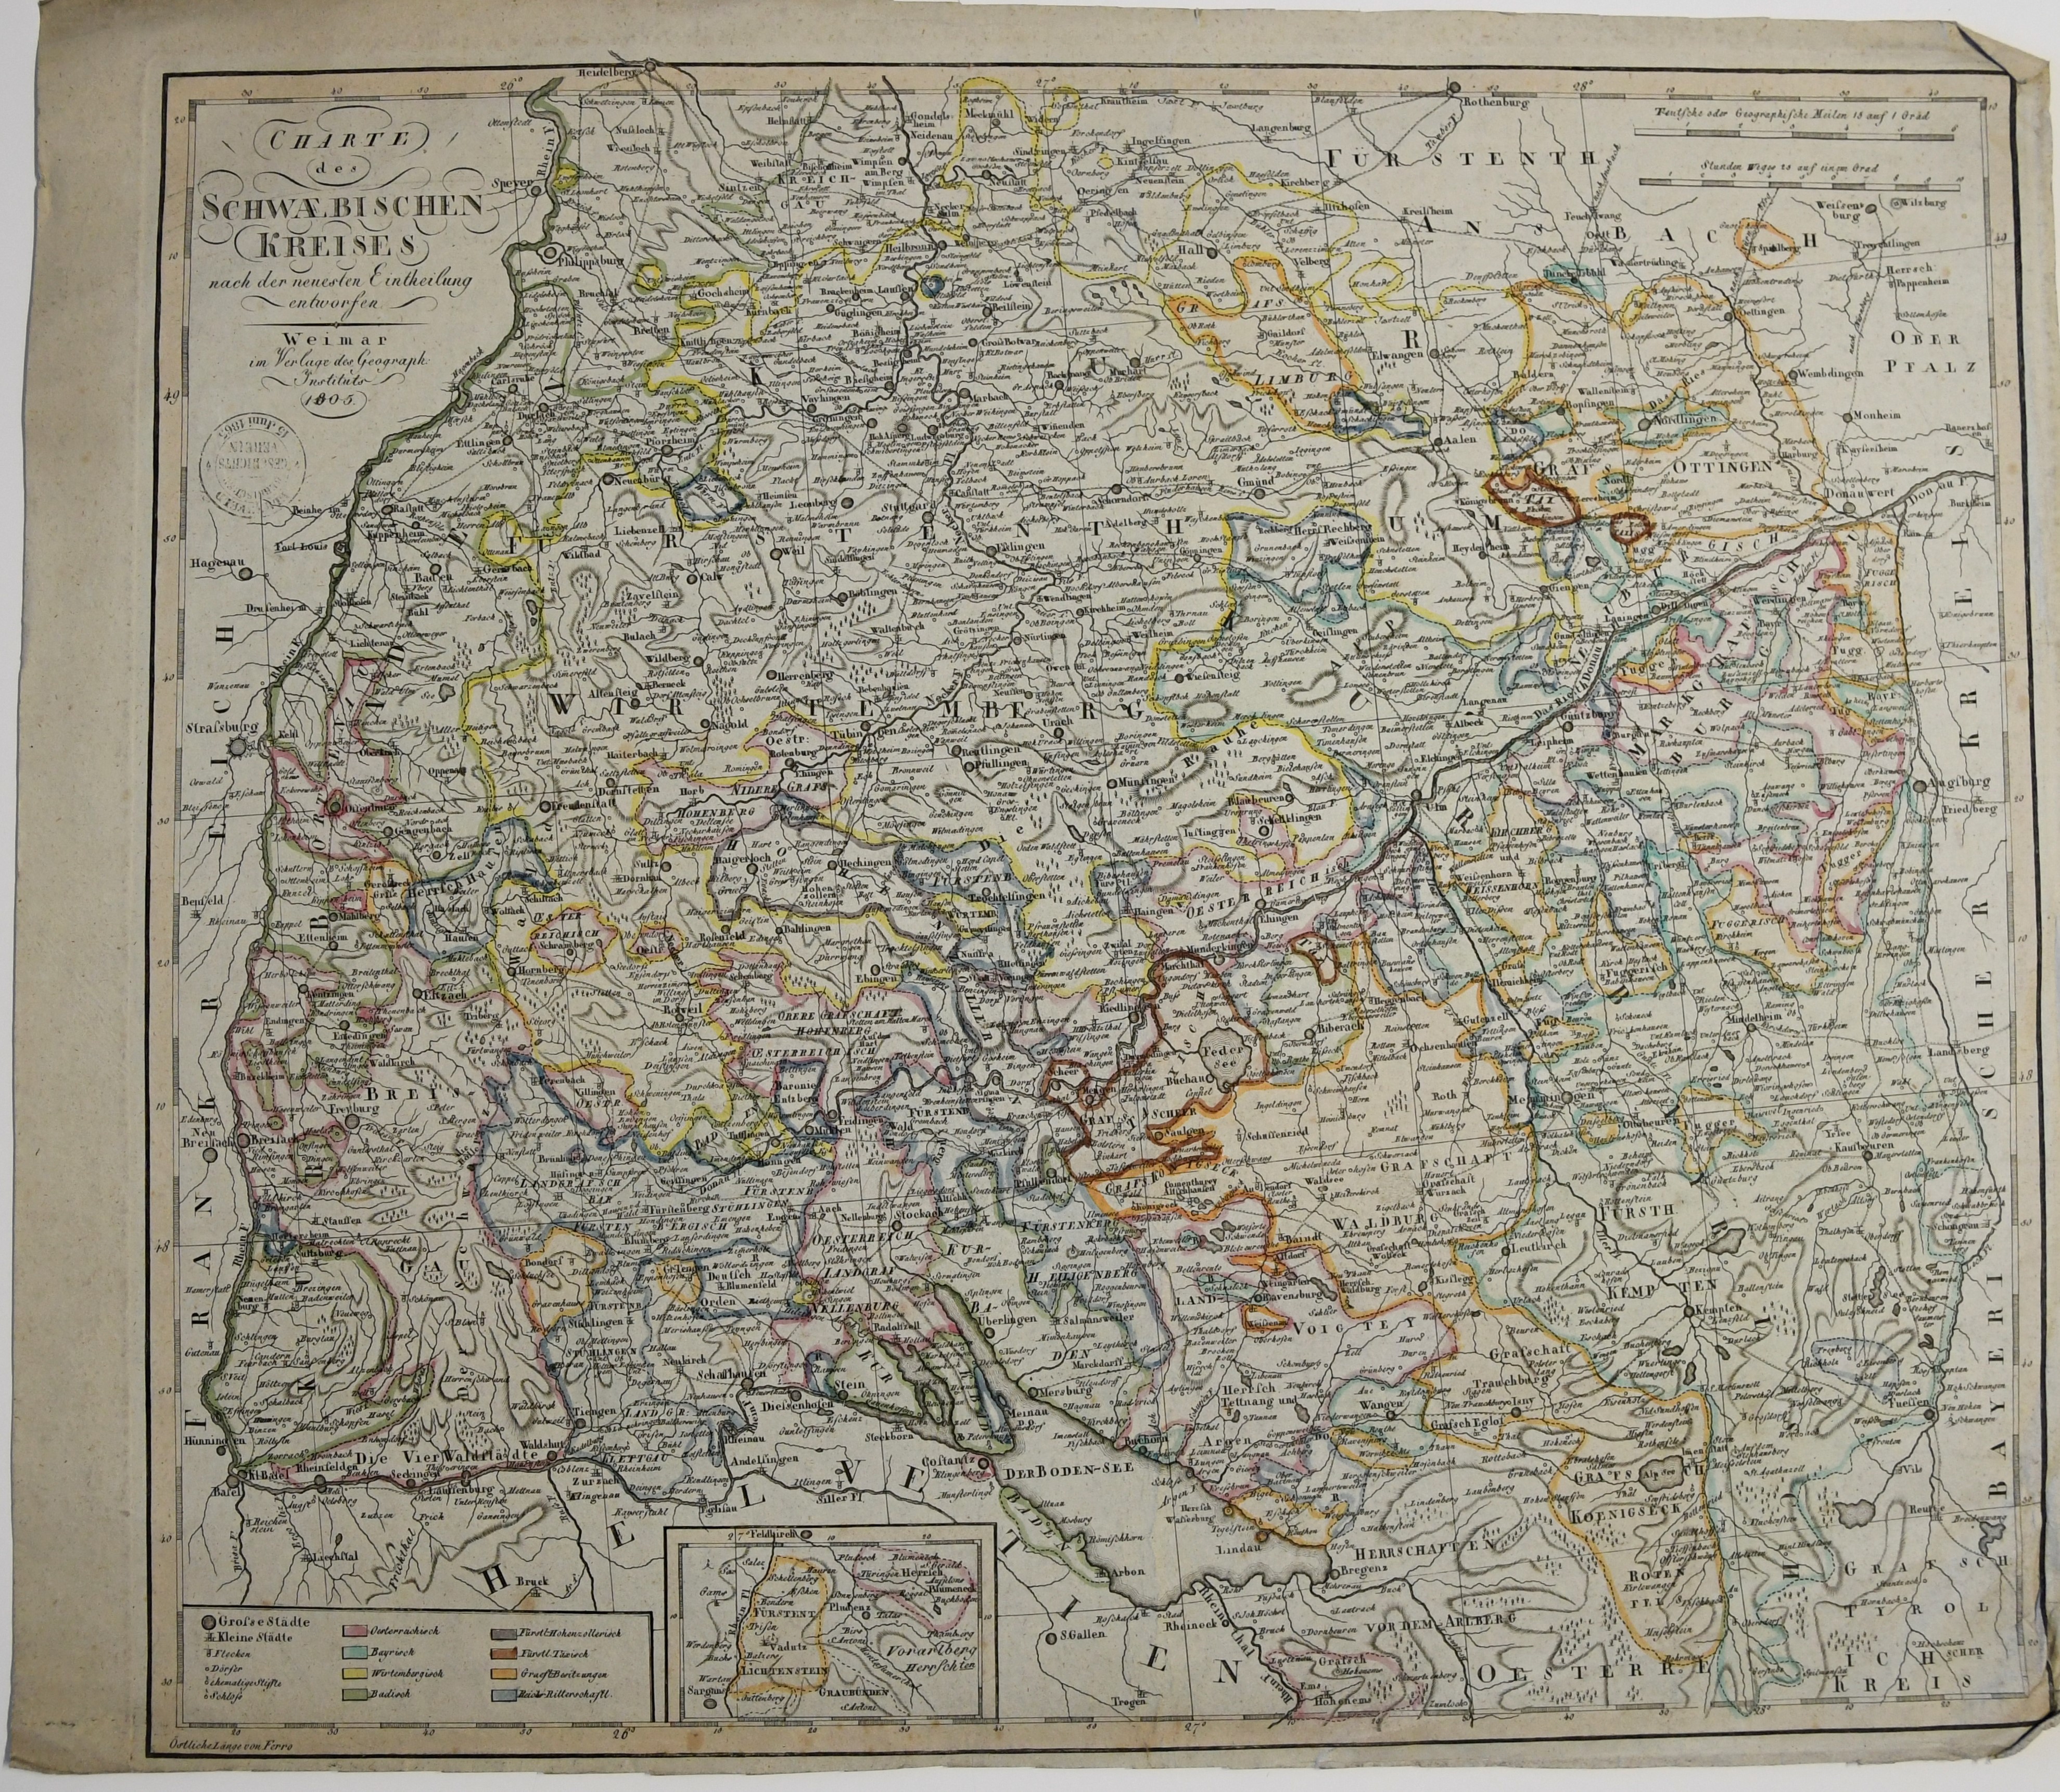 Charte des schwaebischen Kreises ((C) Sammlung Bergischer Geschichtsverein e.V. CC BY-NC)